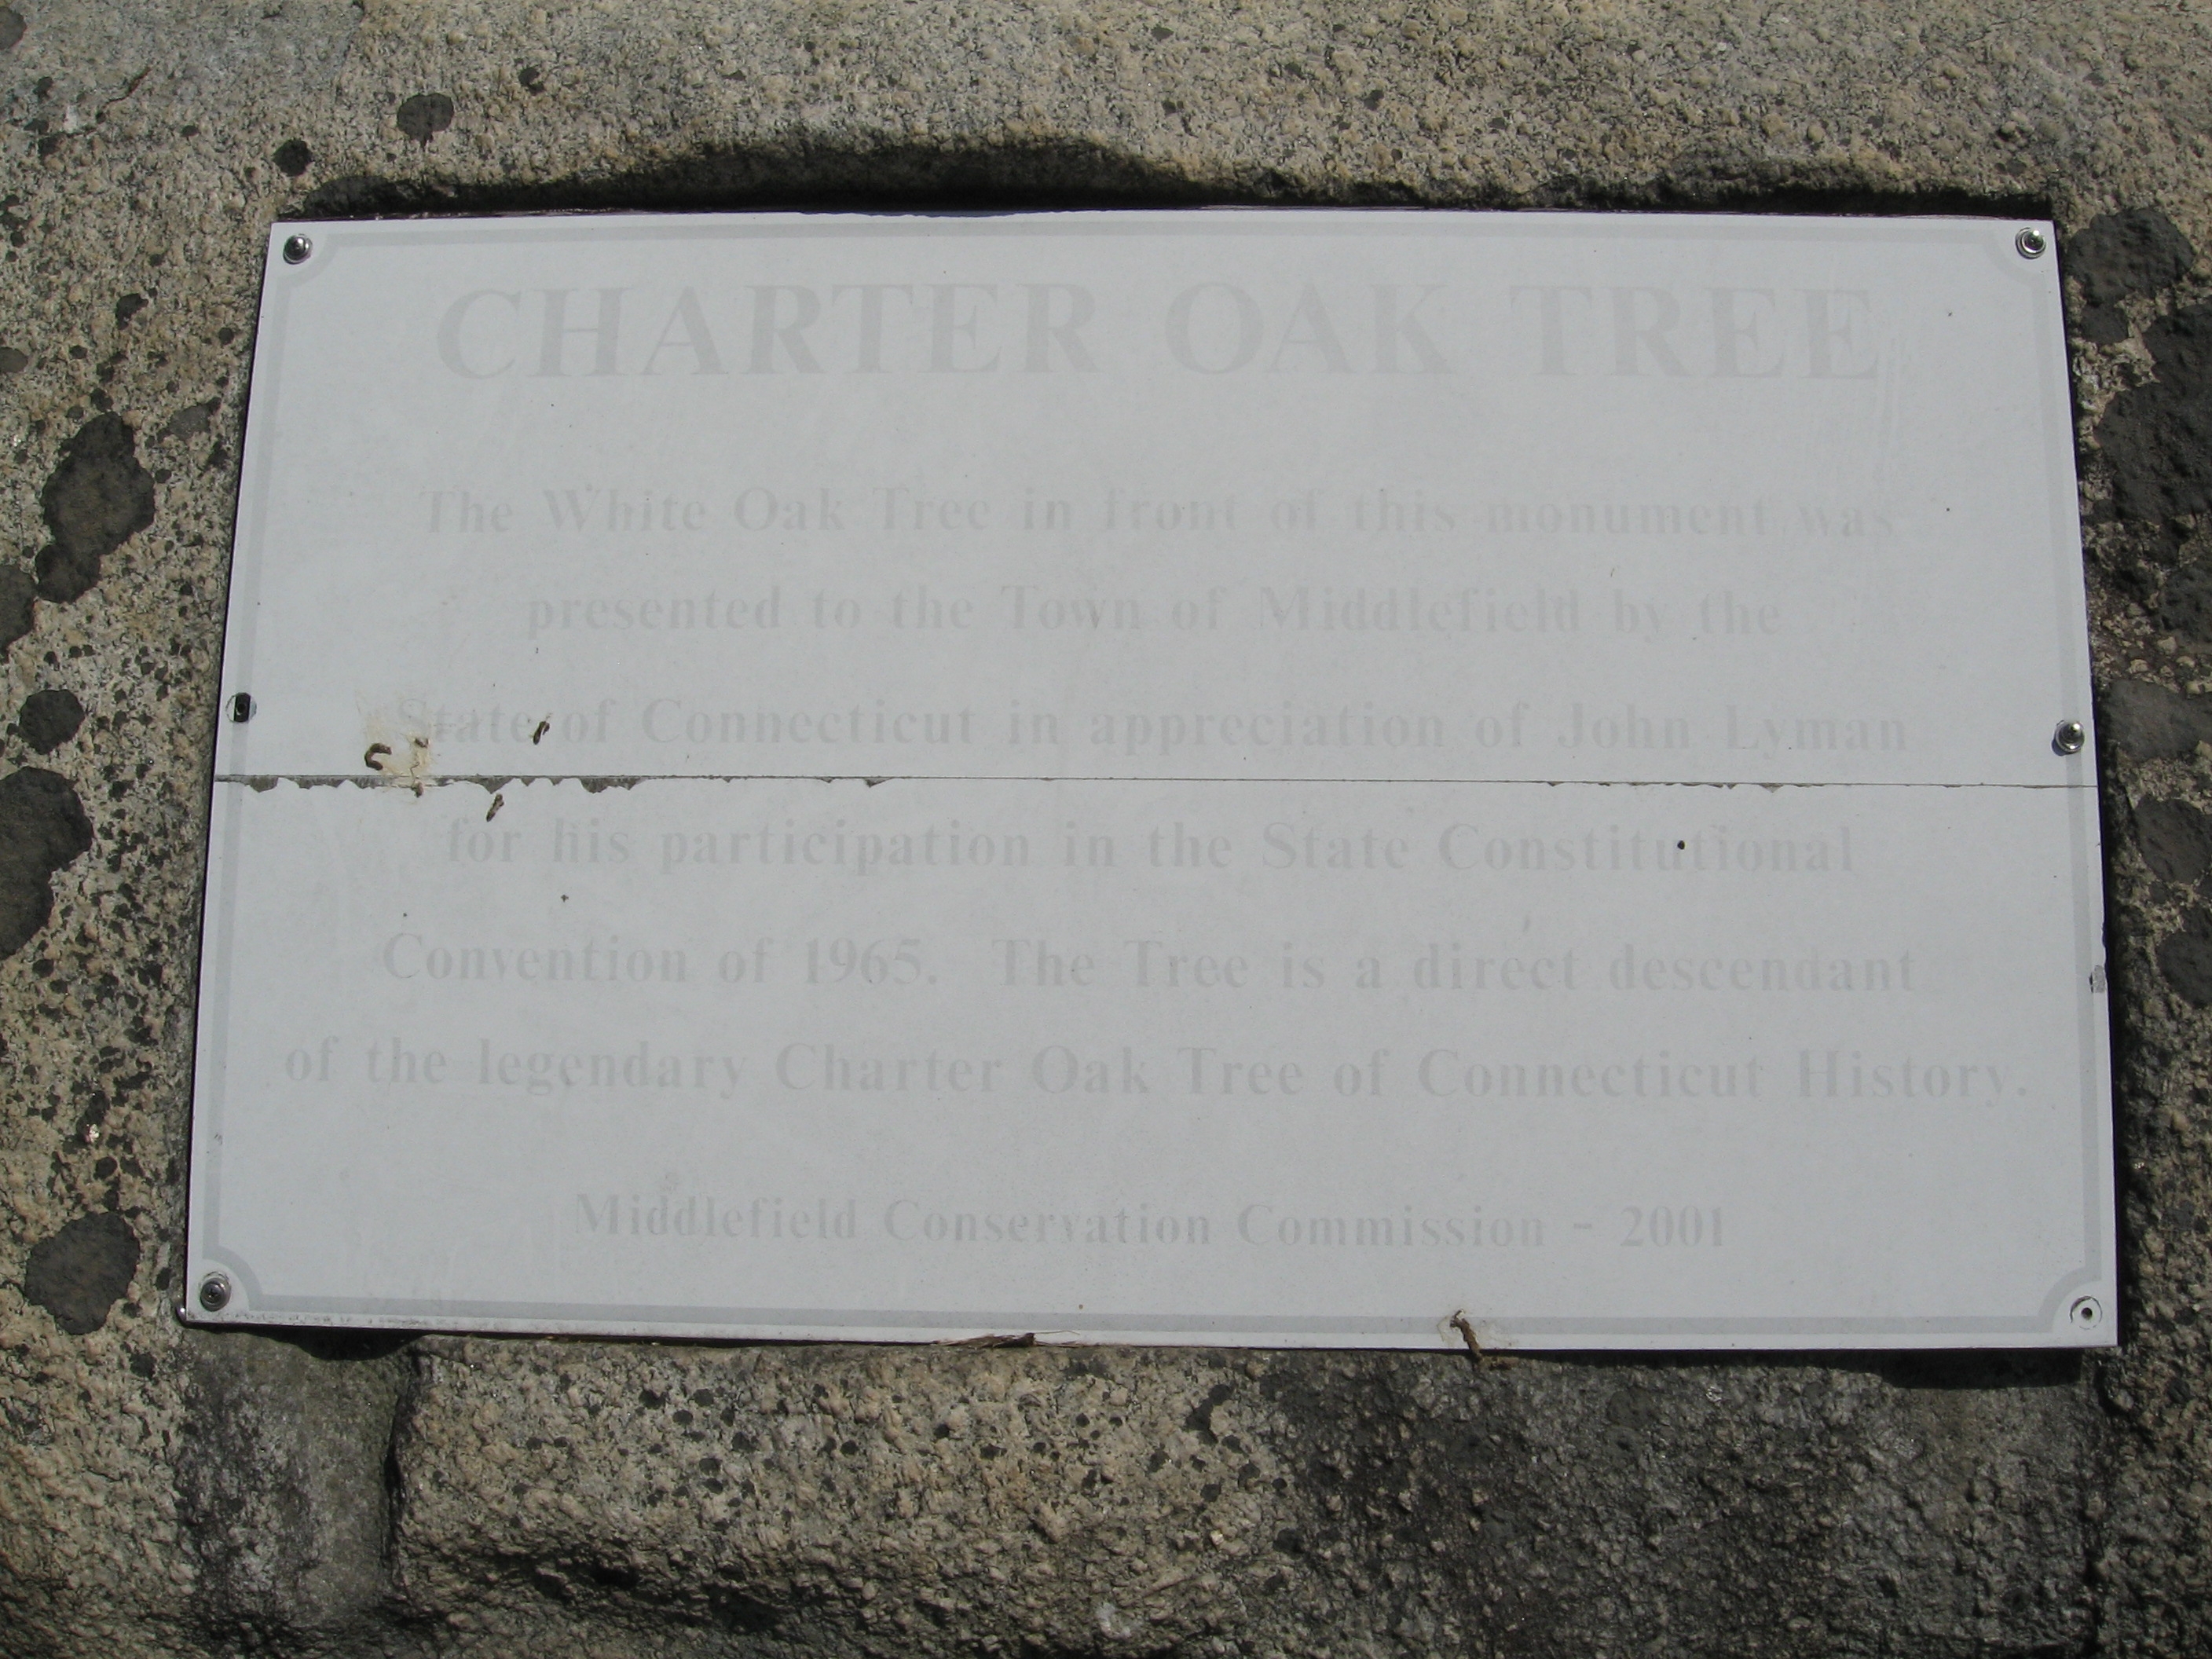 Charter Oak Tree Marker